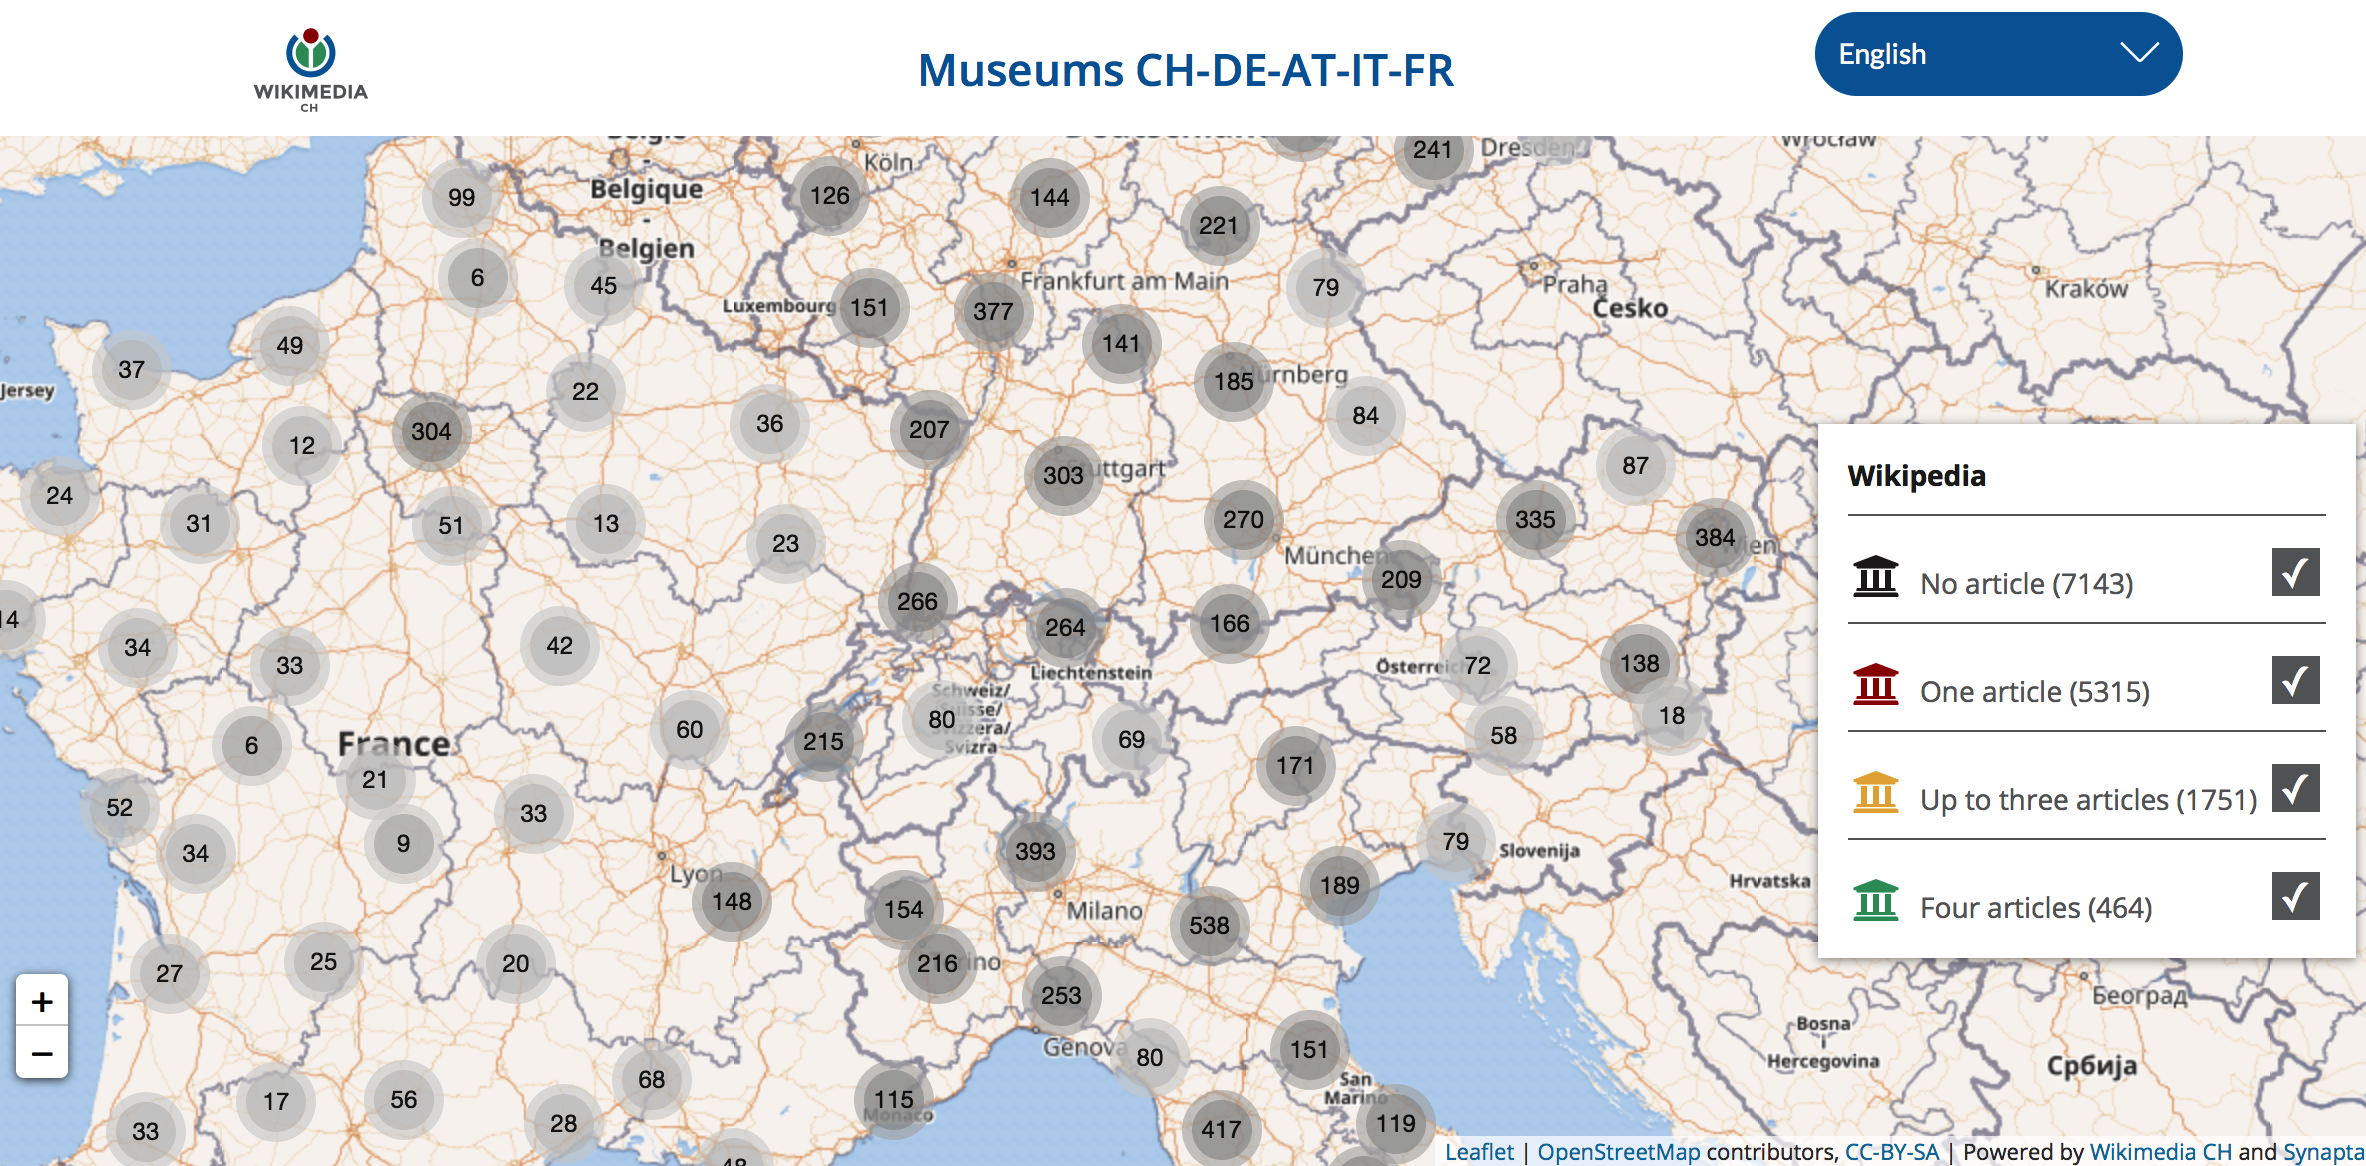 Carte interractive utilisée pour la JIM2020 indiquant la présence des musées situés en Autriche, en France, en Allemagne, en Italie ou en Suisse sur Wikipédia ou Wikidata.